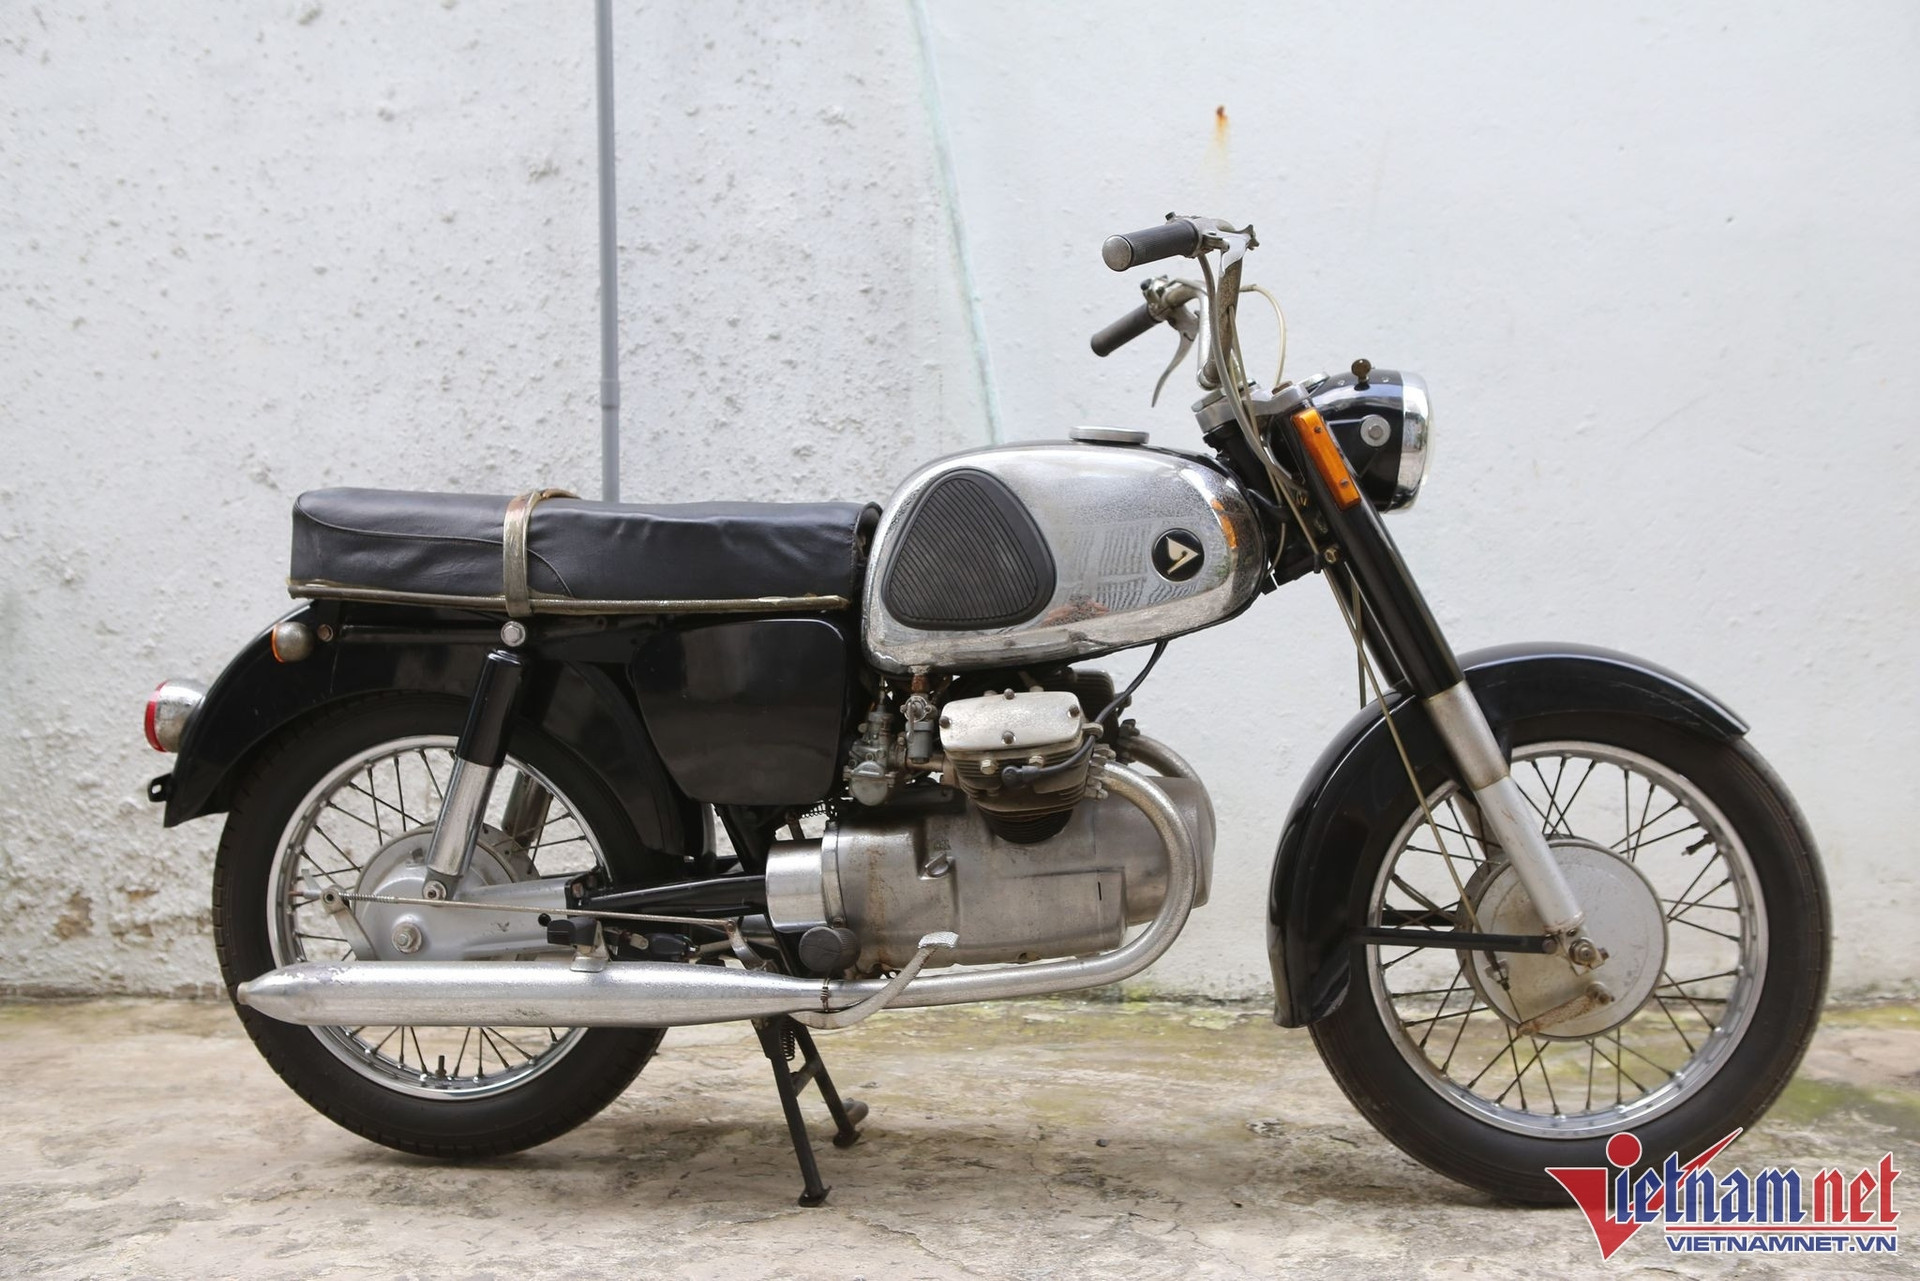 Xe máy cổ Marusho Lilac 61 năm tuổi độc nhất Việt Nam - 4